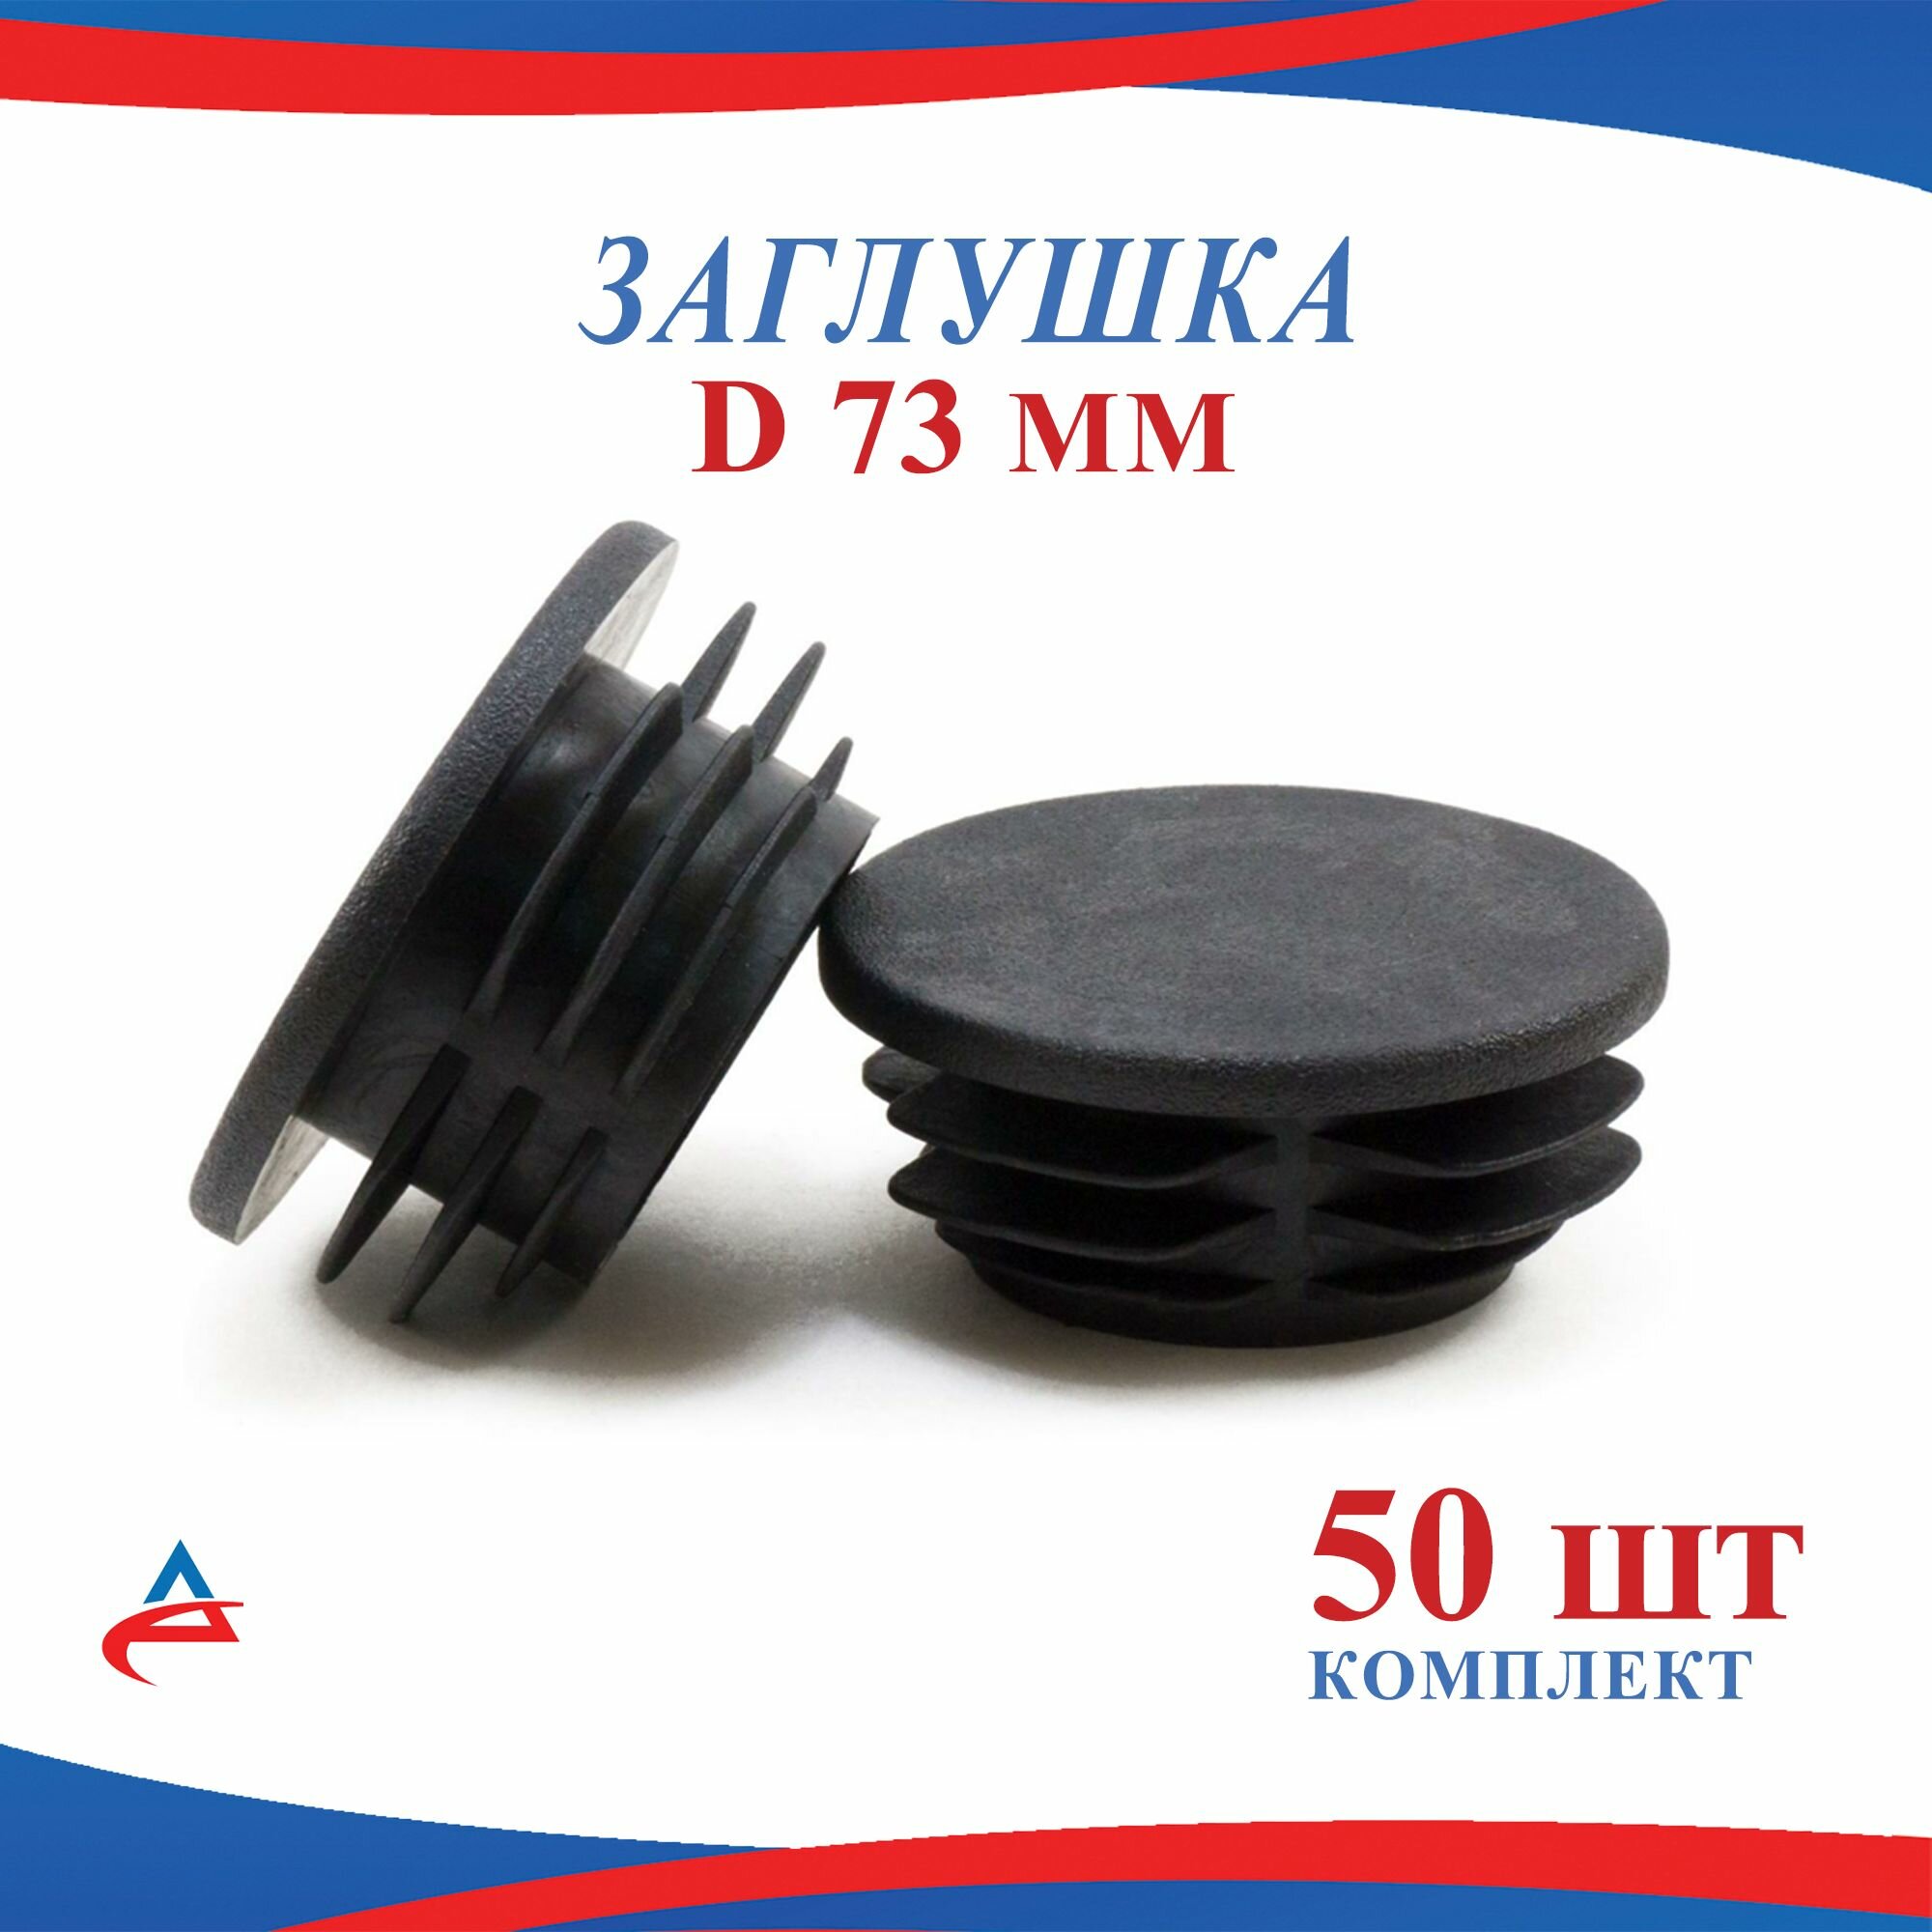 Заглушка Д 73 мм пластиковая круглая для труб диаметр D 73 мм (50шт)